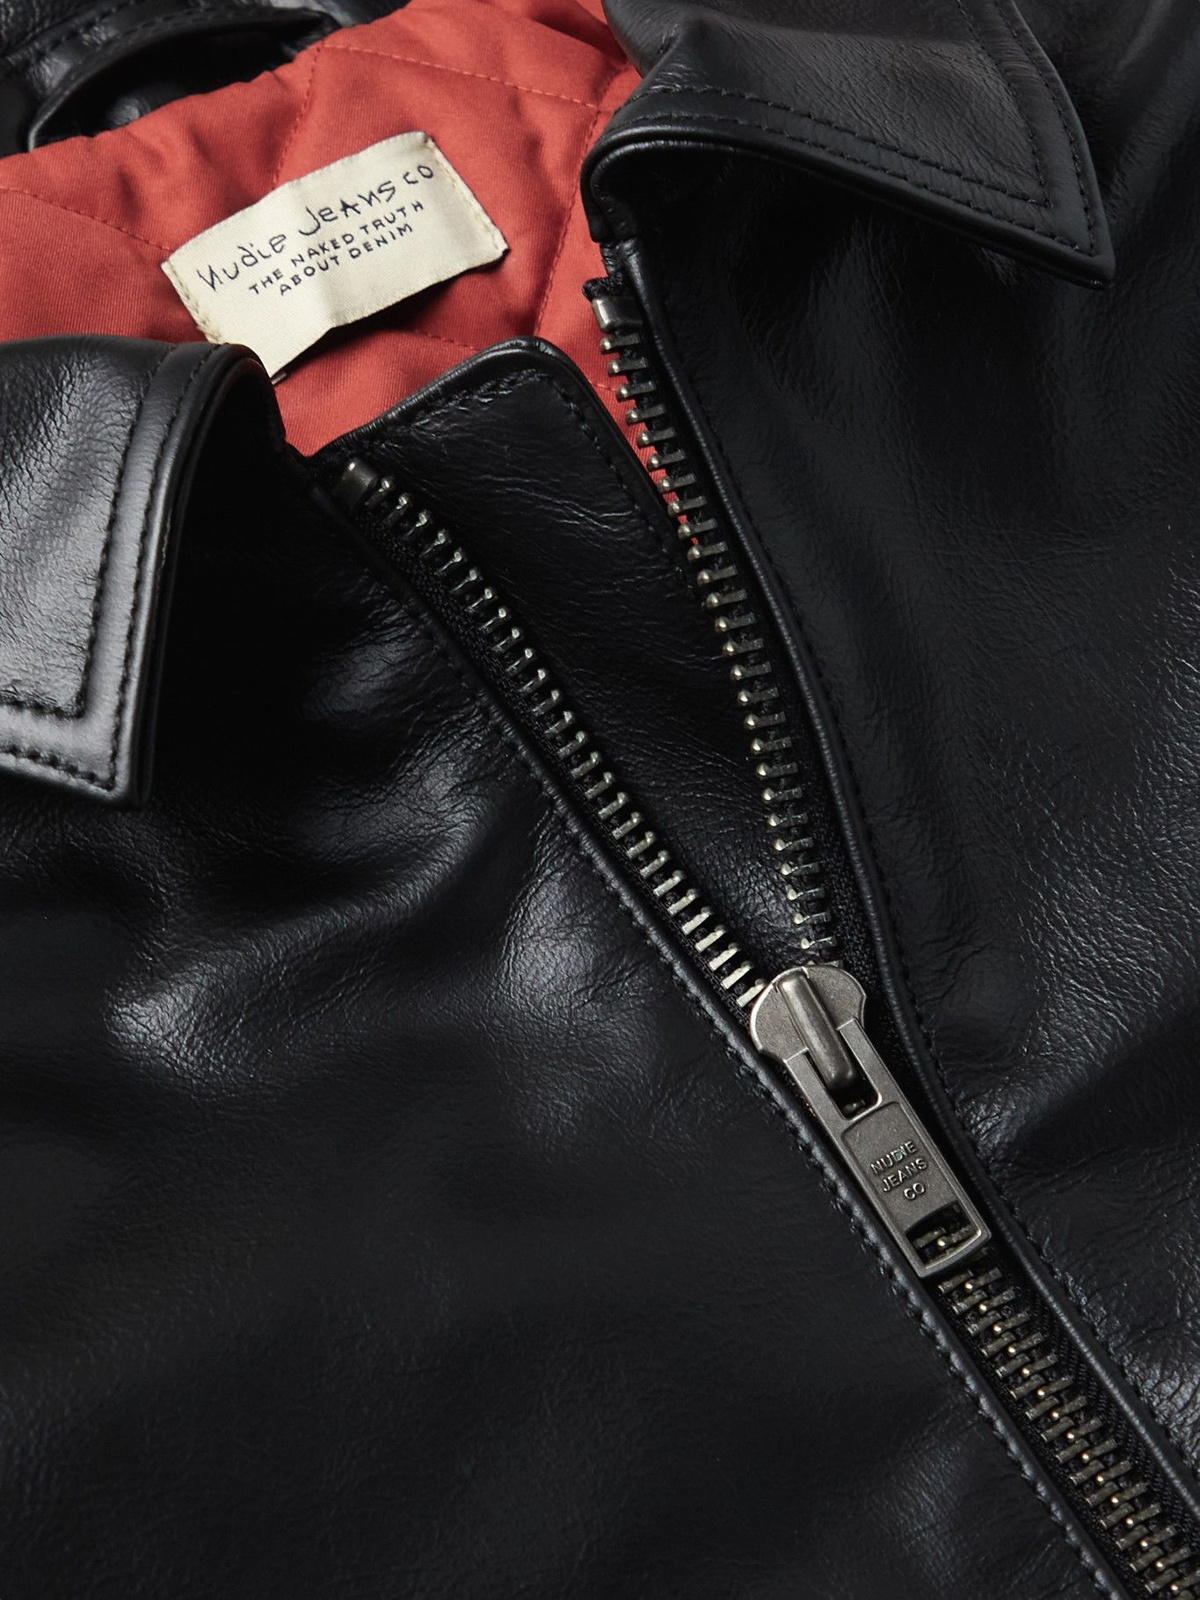 Nudie Jeans - Eddy Leather Blouson Jacket - Black Nudie Jeans Co